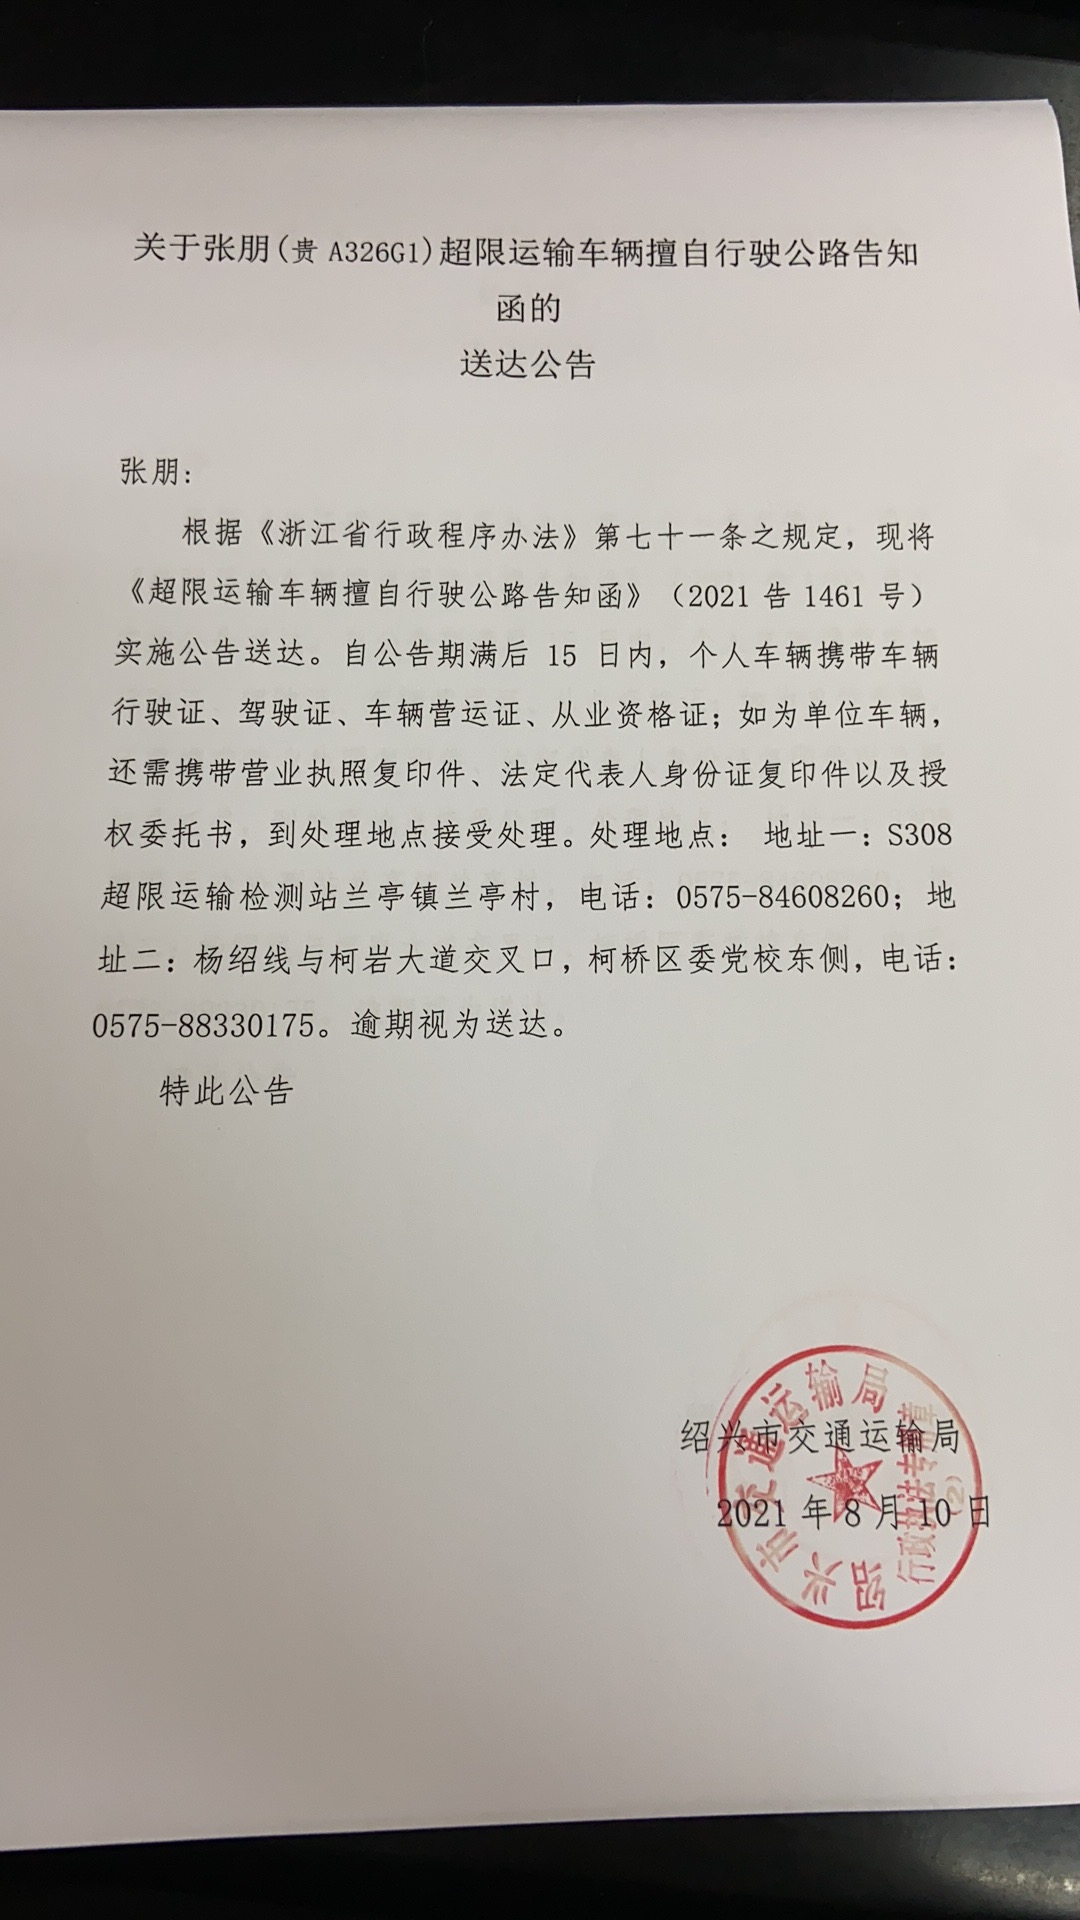 关于张朋(贵a326g1)超限运输车辆擅自行驶公路告知函的送达公告